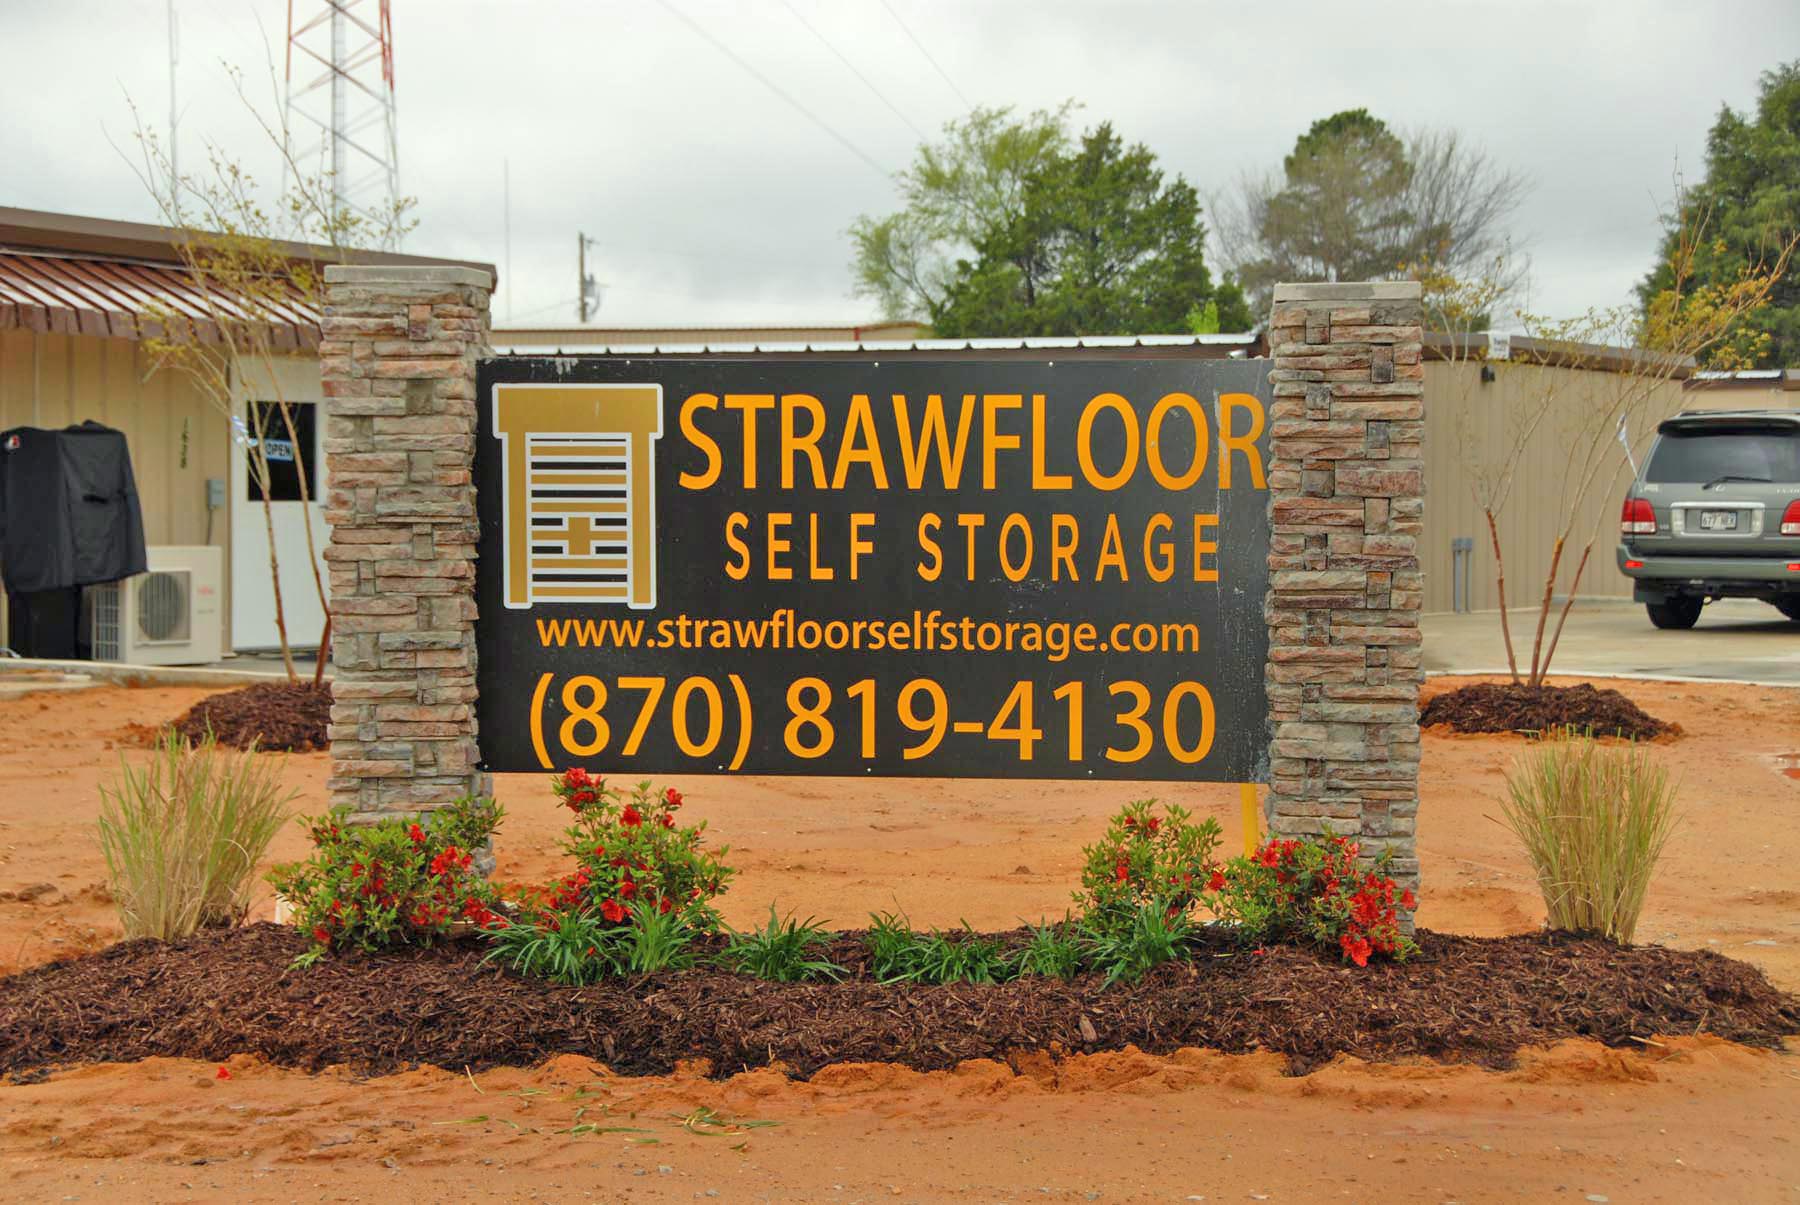 Strawfloor Self Storage